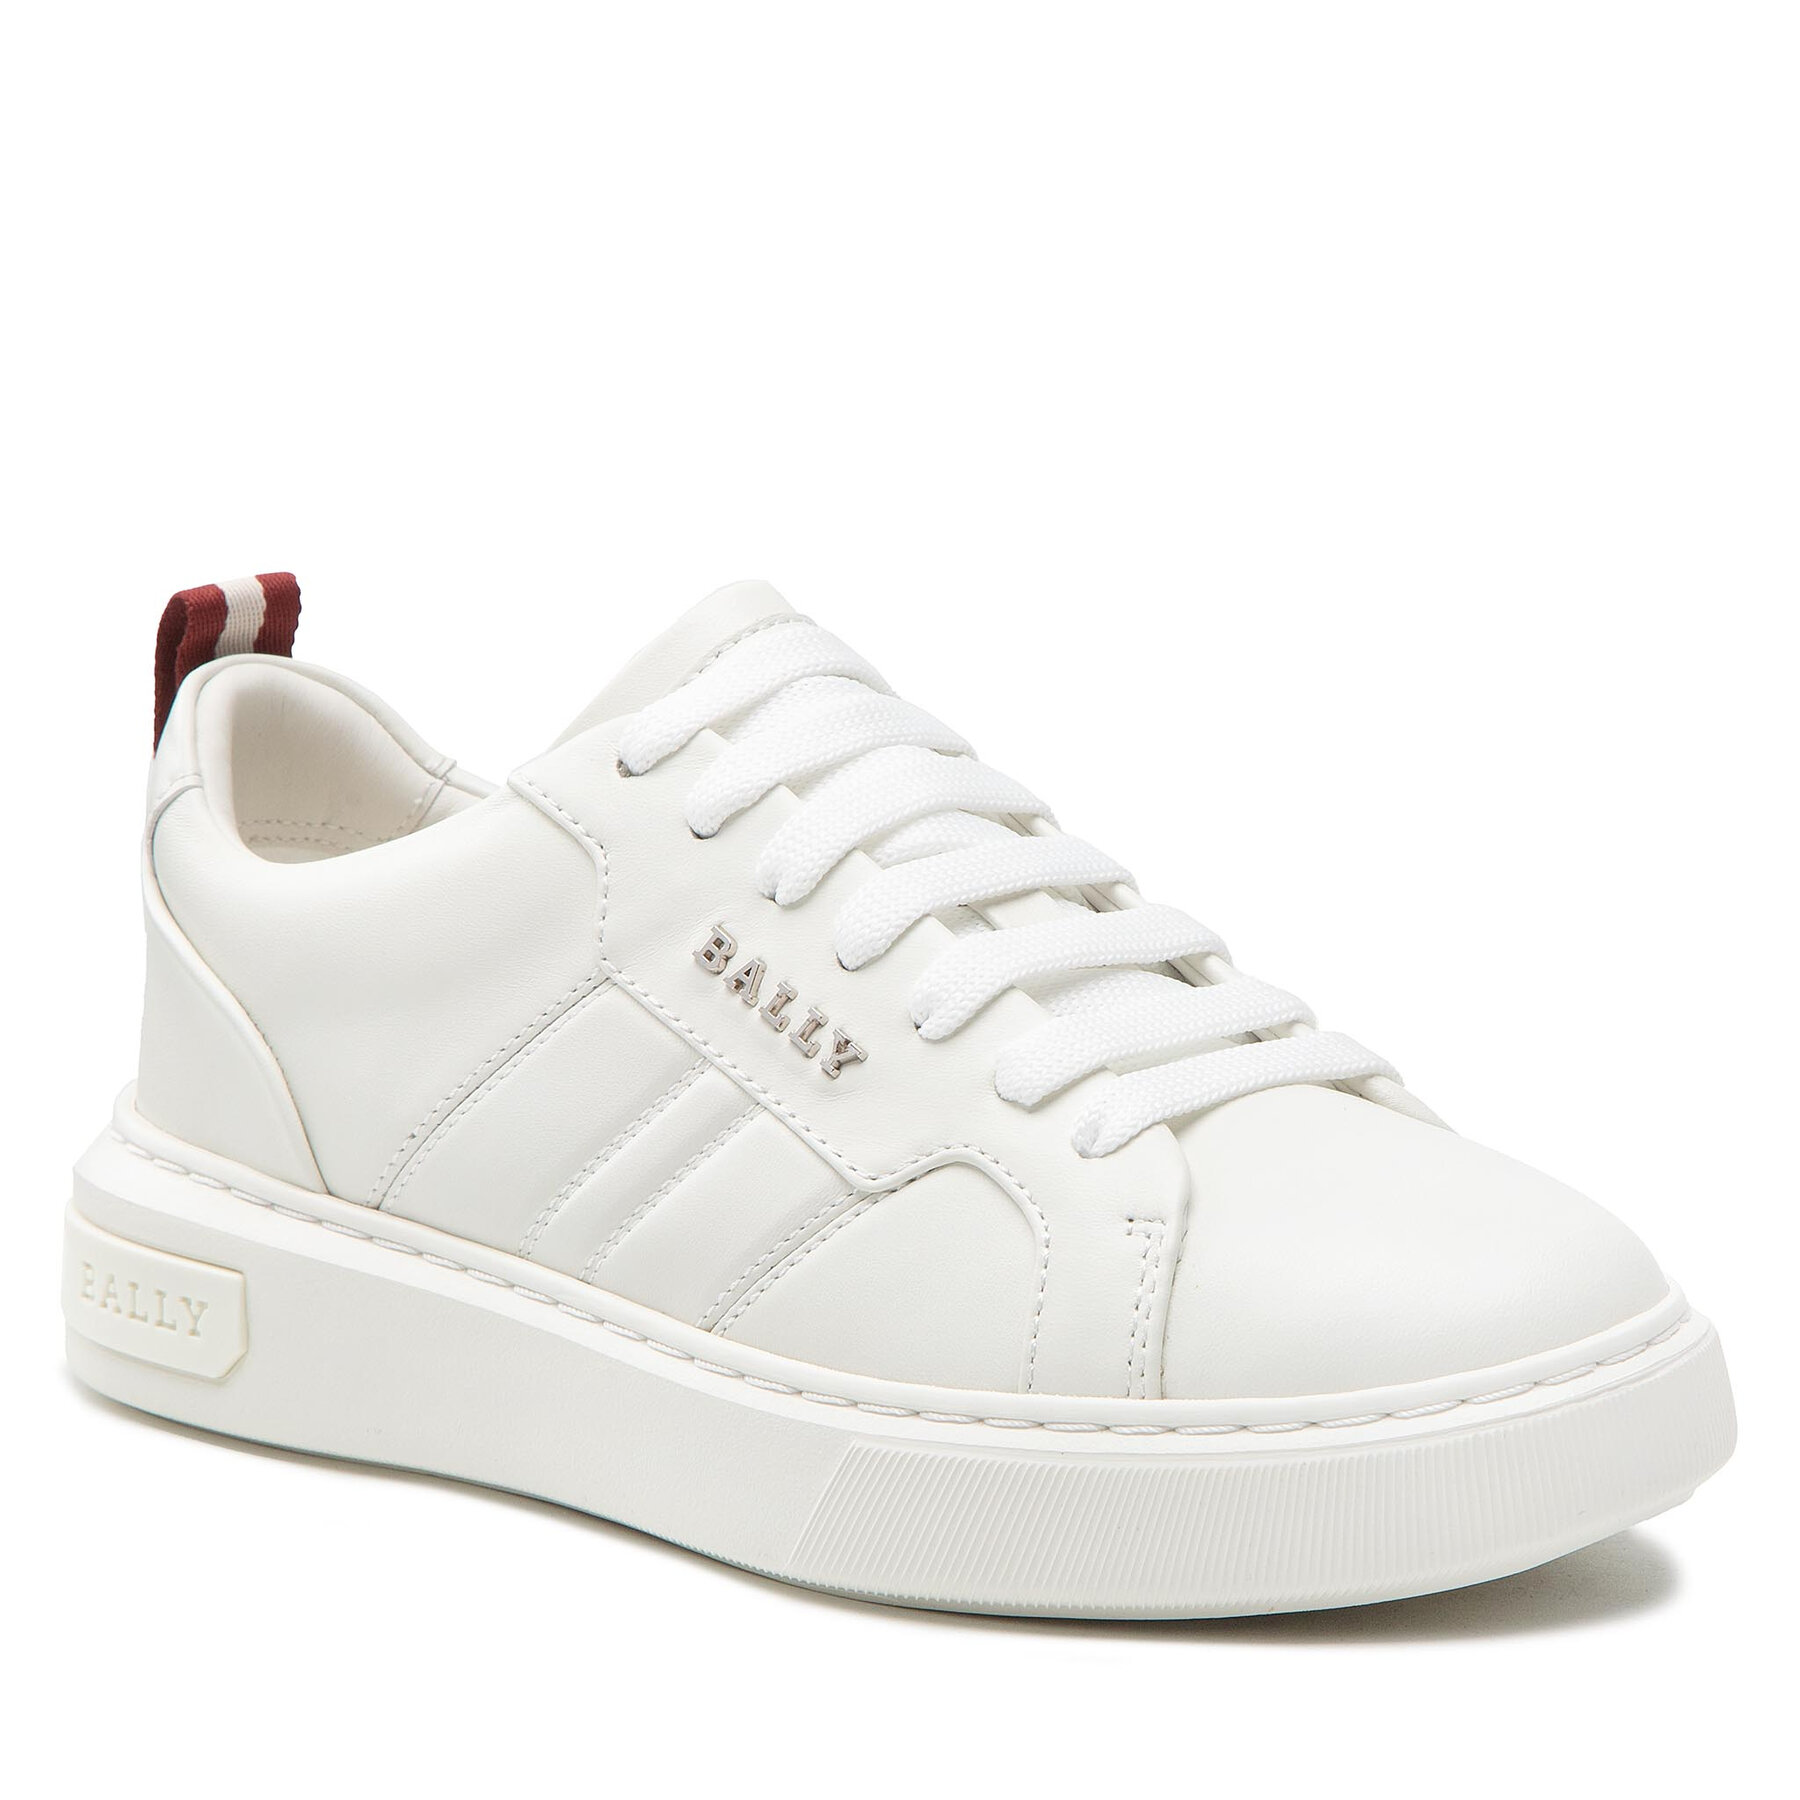 Sneakers Bally Maxim 6300157 White